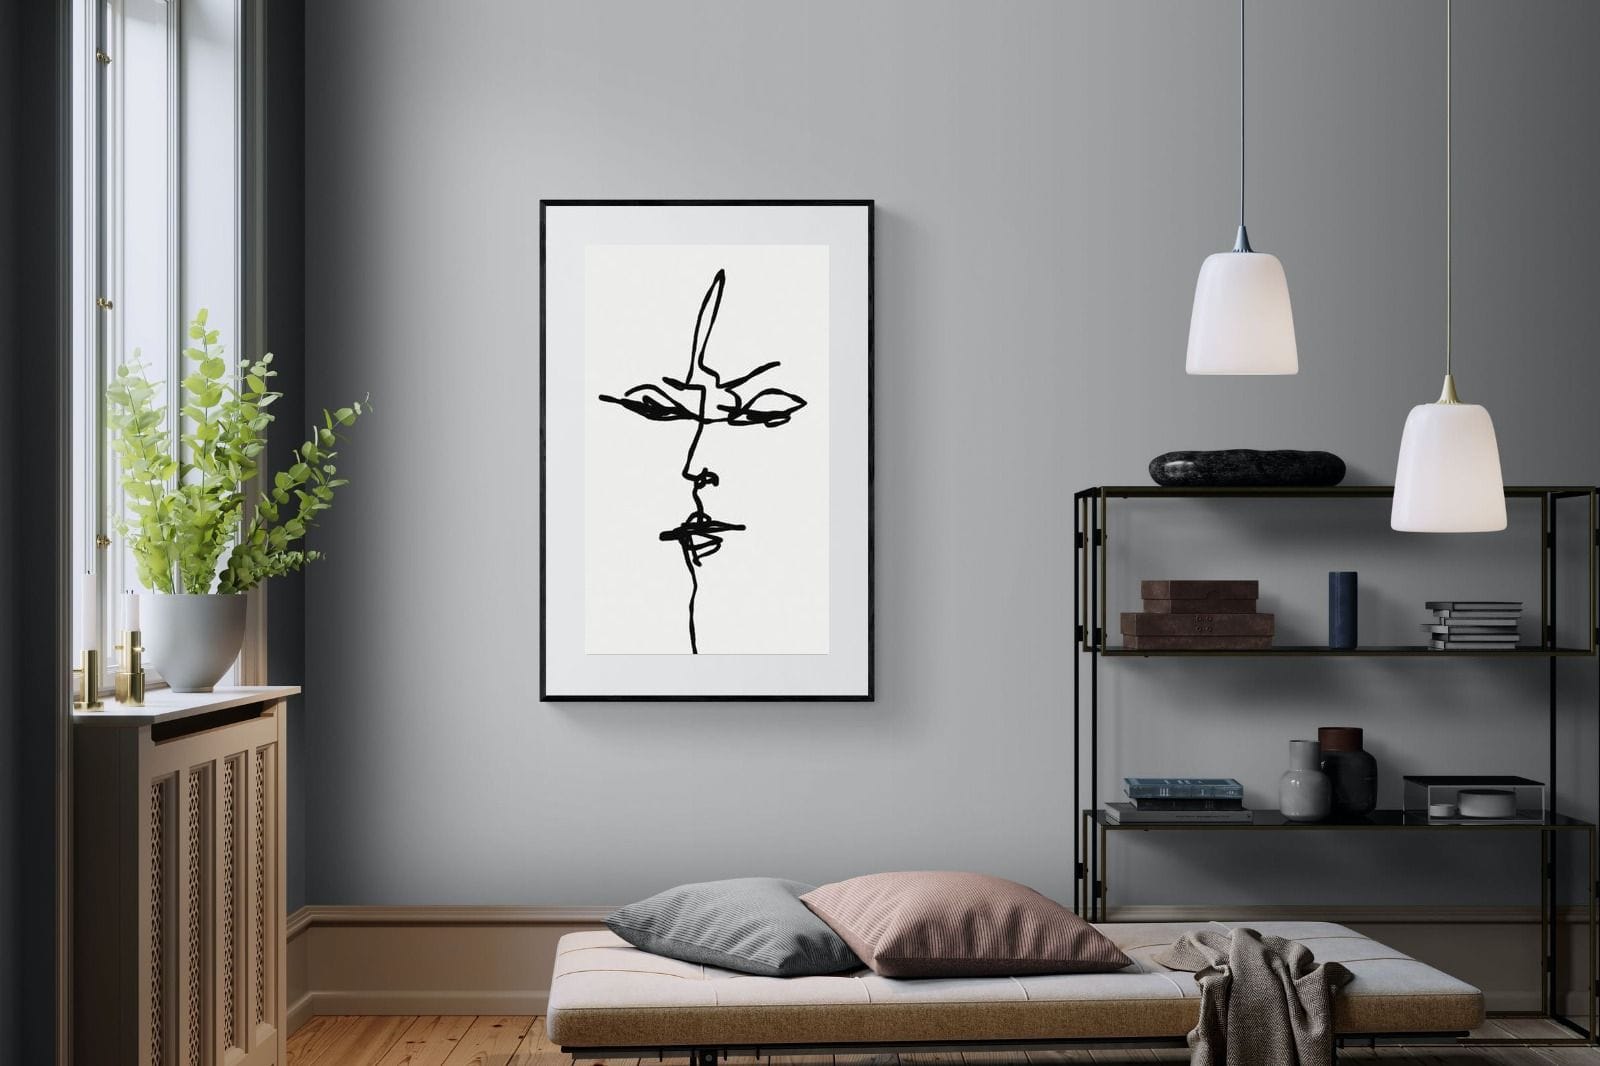 Him-Wall_Art-100 x 150cm-Framed Print-Black-Pixalot